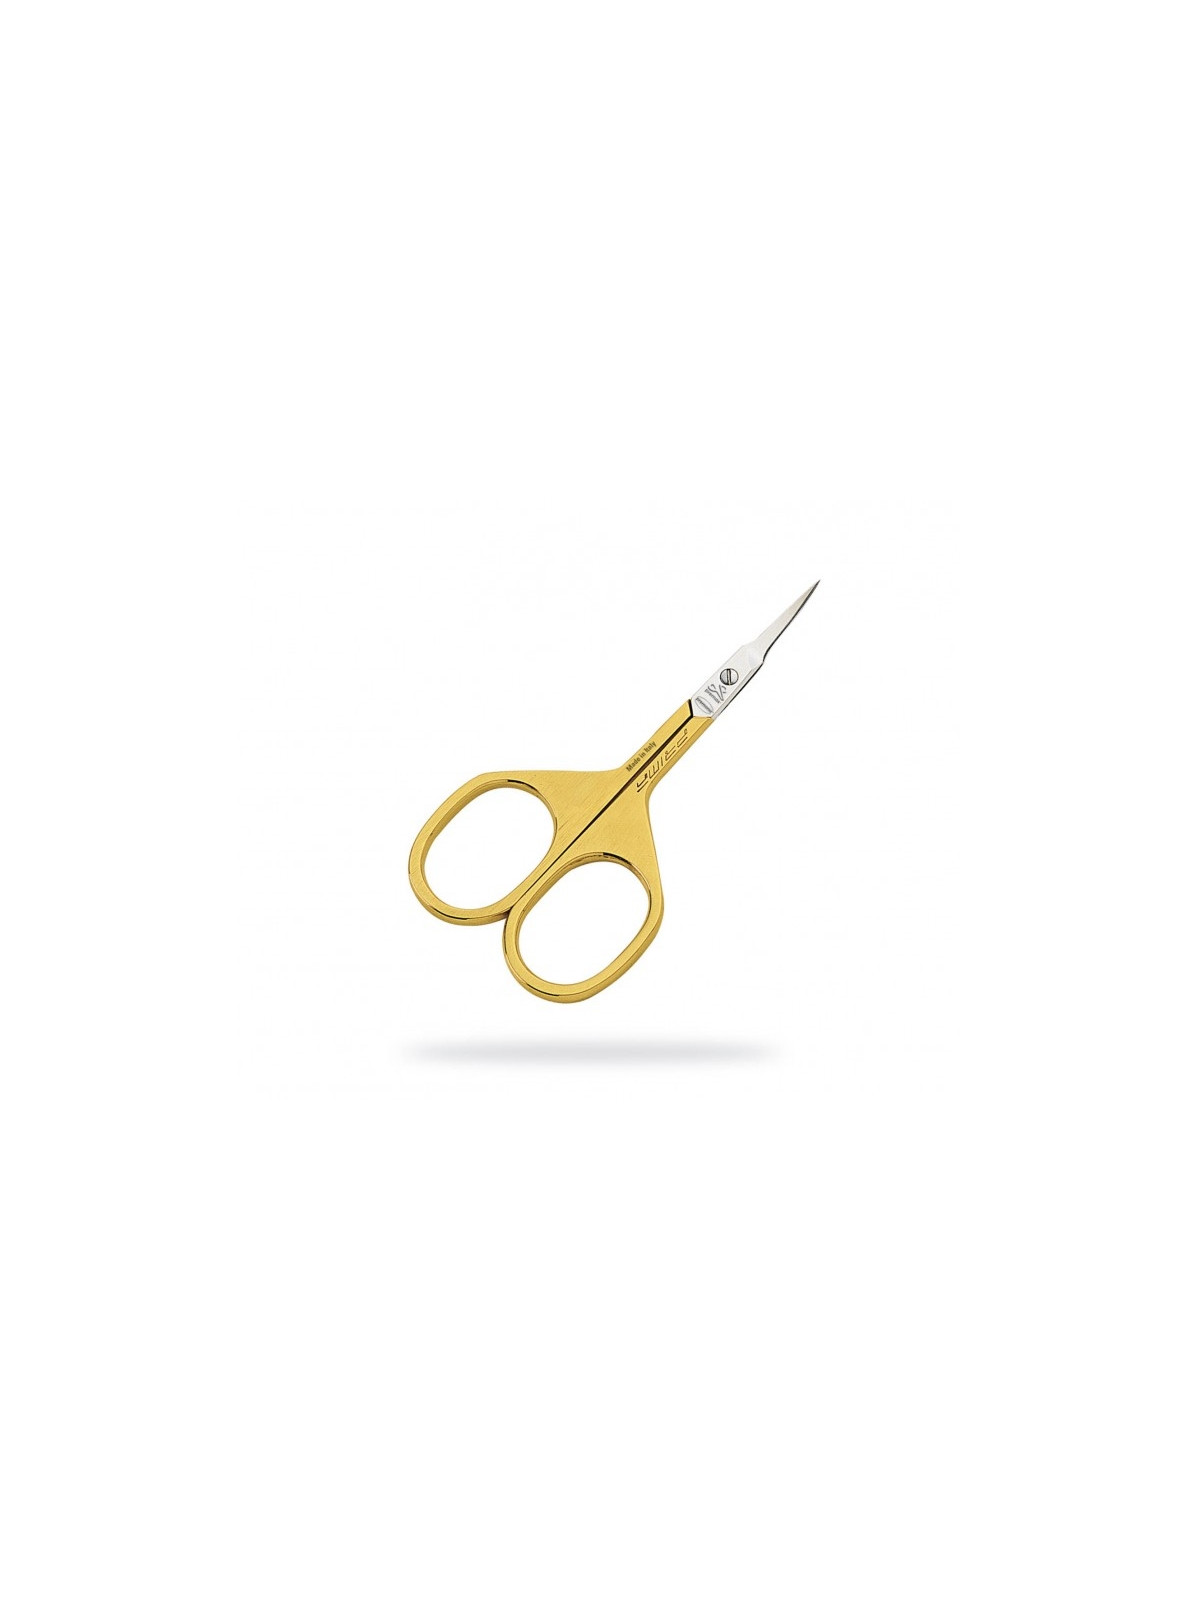 Premax Optima Gold Cuticle Scissors